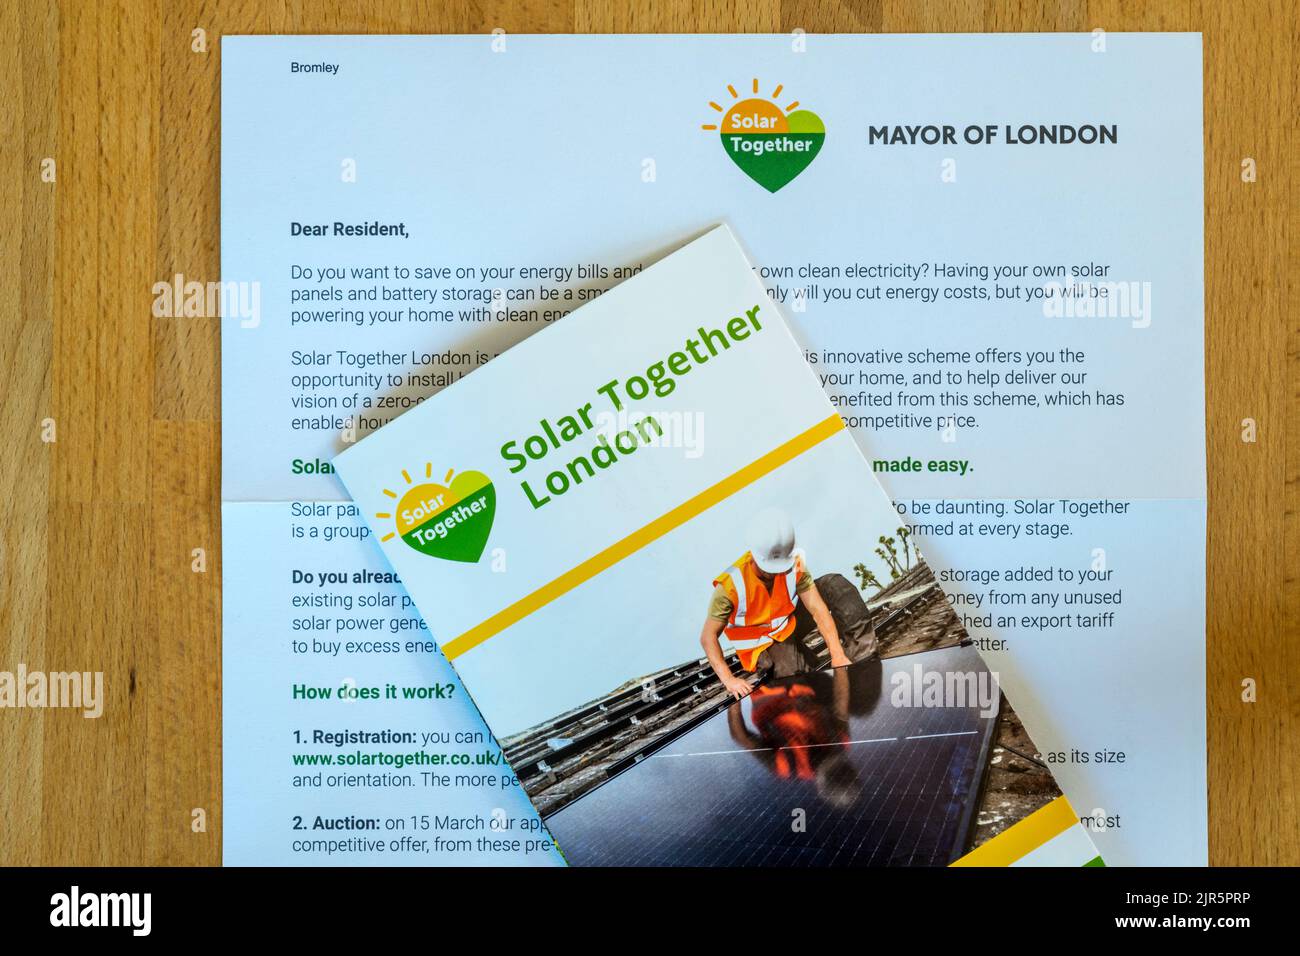 Une lettre et une brochure du maire de Londres aux résidents faisant la promotion de Solar Together London, une initiative visant à installer des cellules photovoltaïques dans les maisons. Banque D'Images